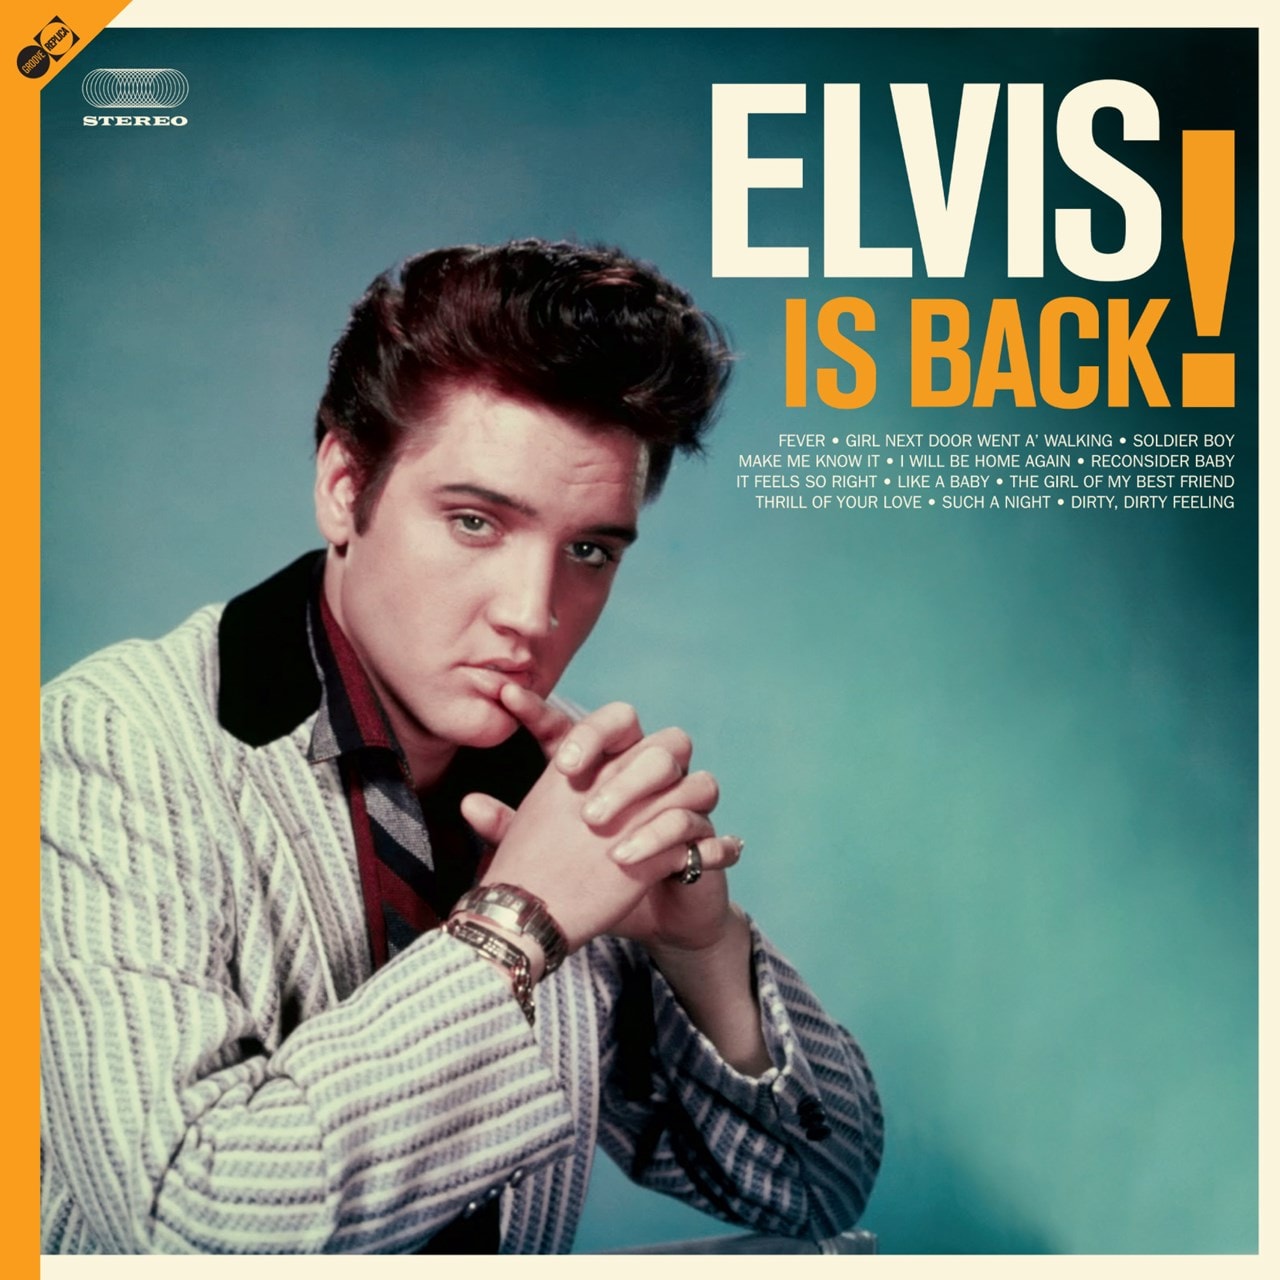 Dirty feeling. Элвис Пресли фото. Elvis Presley - Elvis is back! (LP 1960). Elvis Presley толстый. Elvis Presley vinilo.